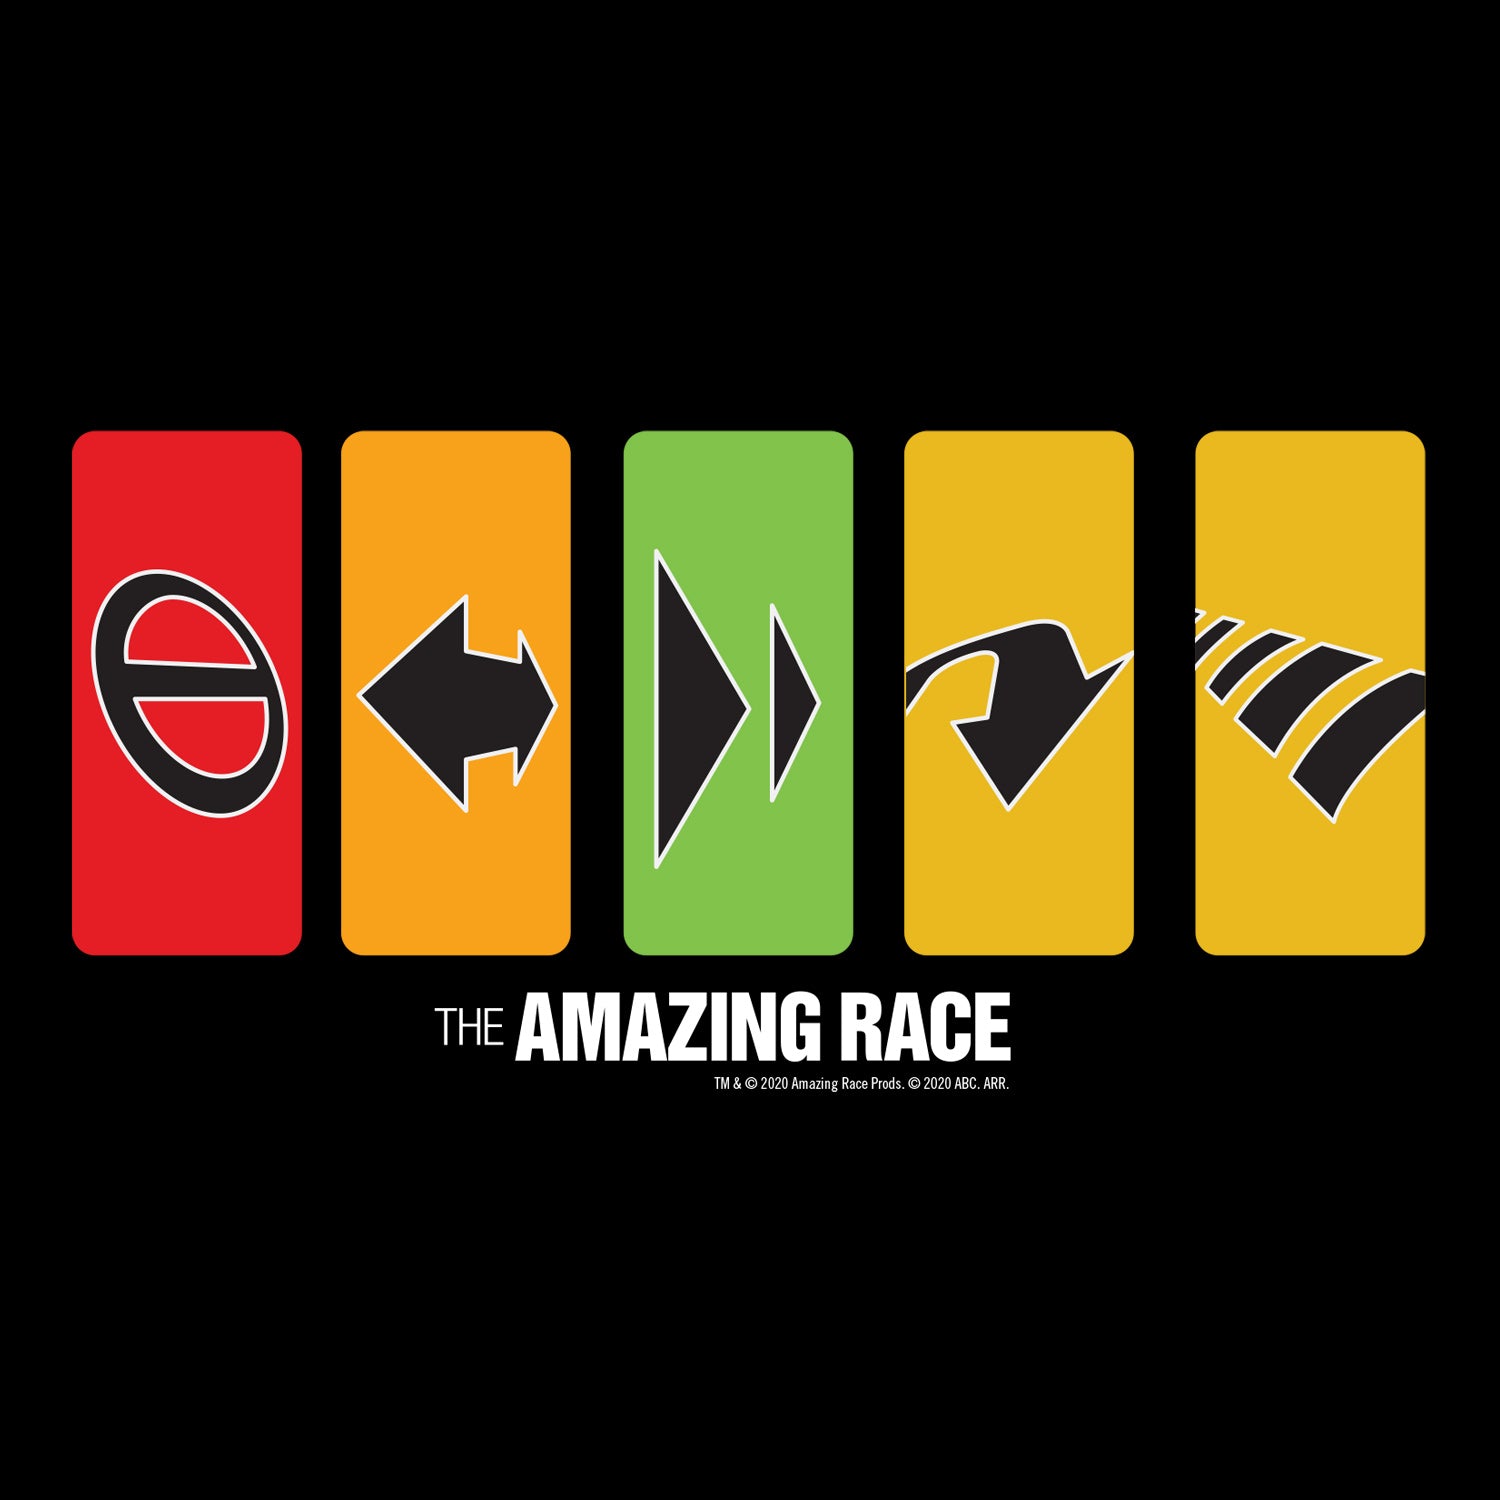 The Amazing Race Race Clues 17 oz Pint Glass - Paramount Shop